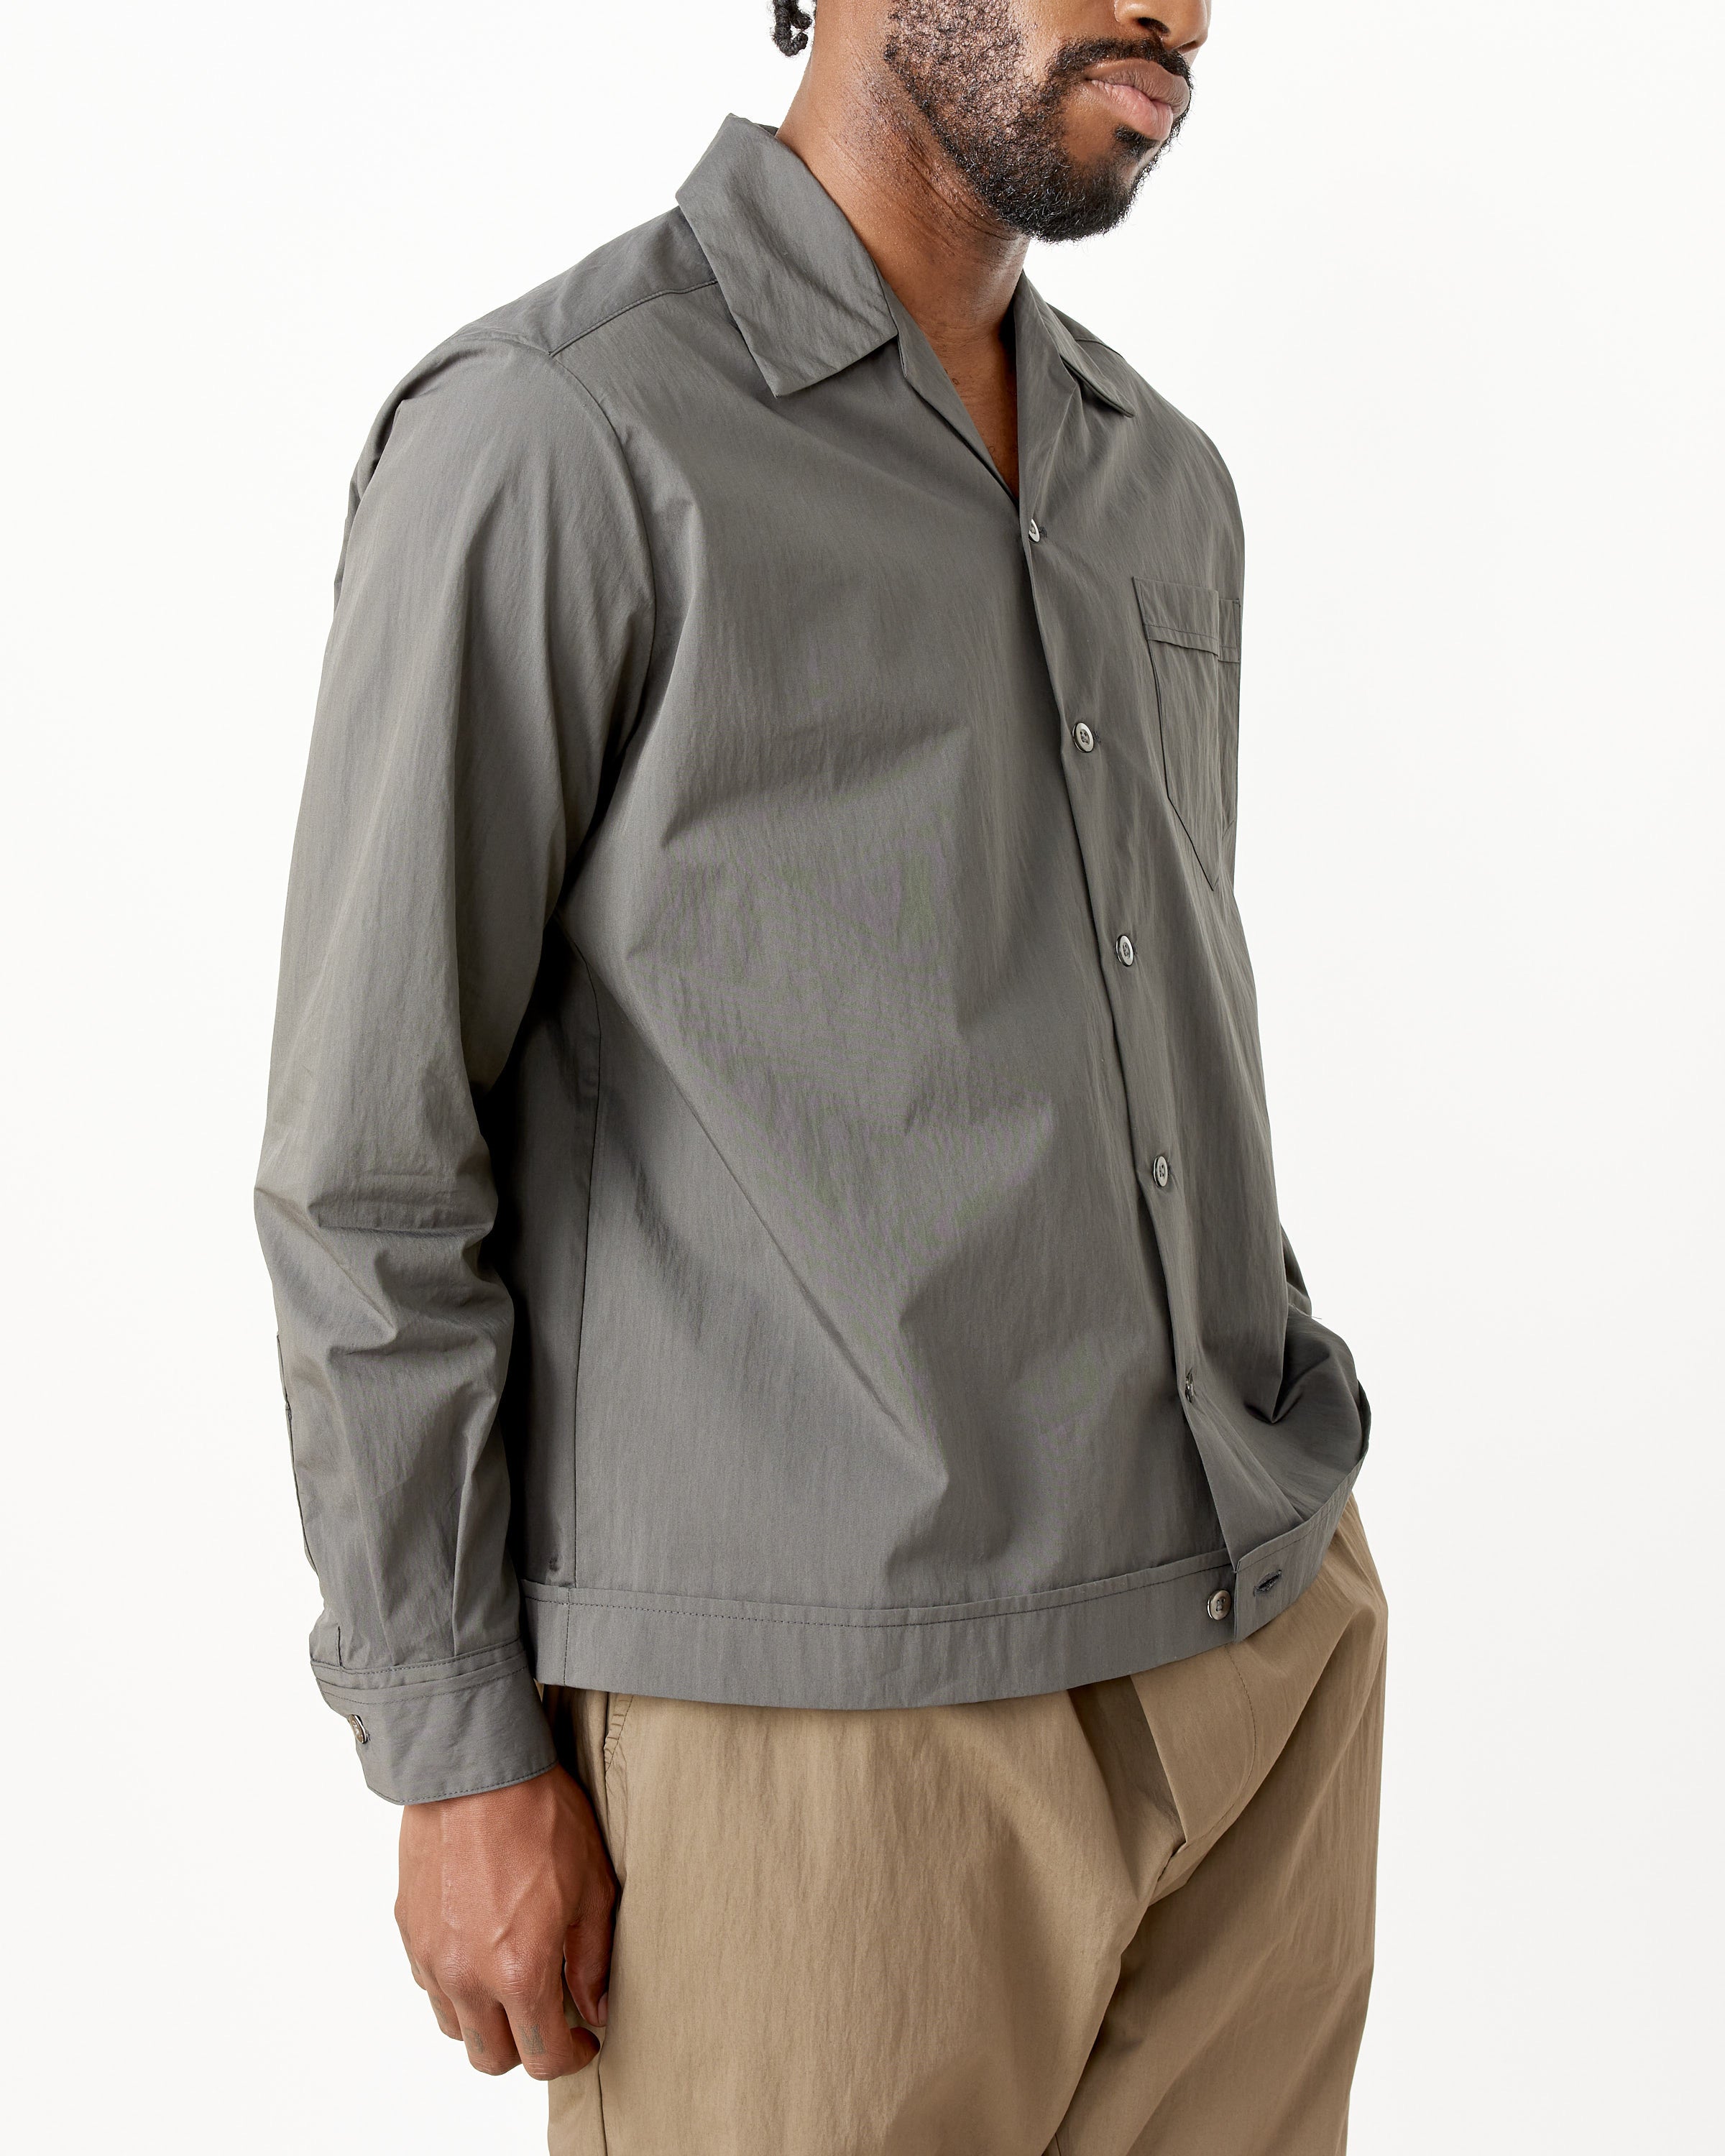 27,200円sillage ADI コラボ 長袖シャツ スパイス オーバーサイズ